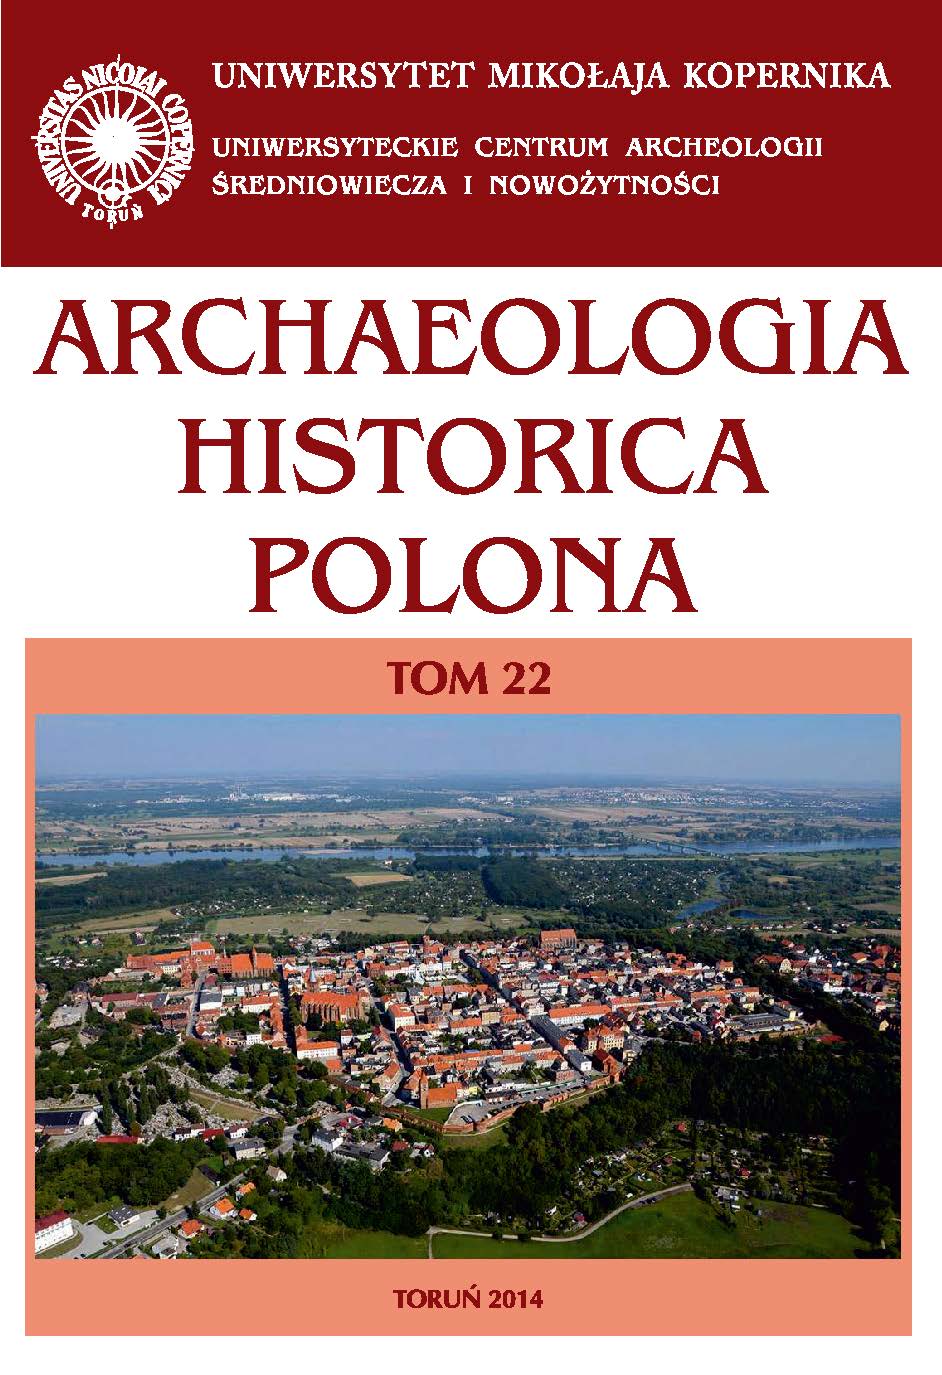 Archaeologia Historica Polona